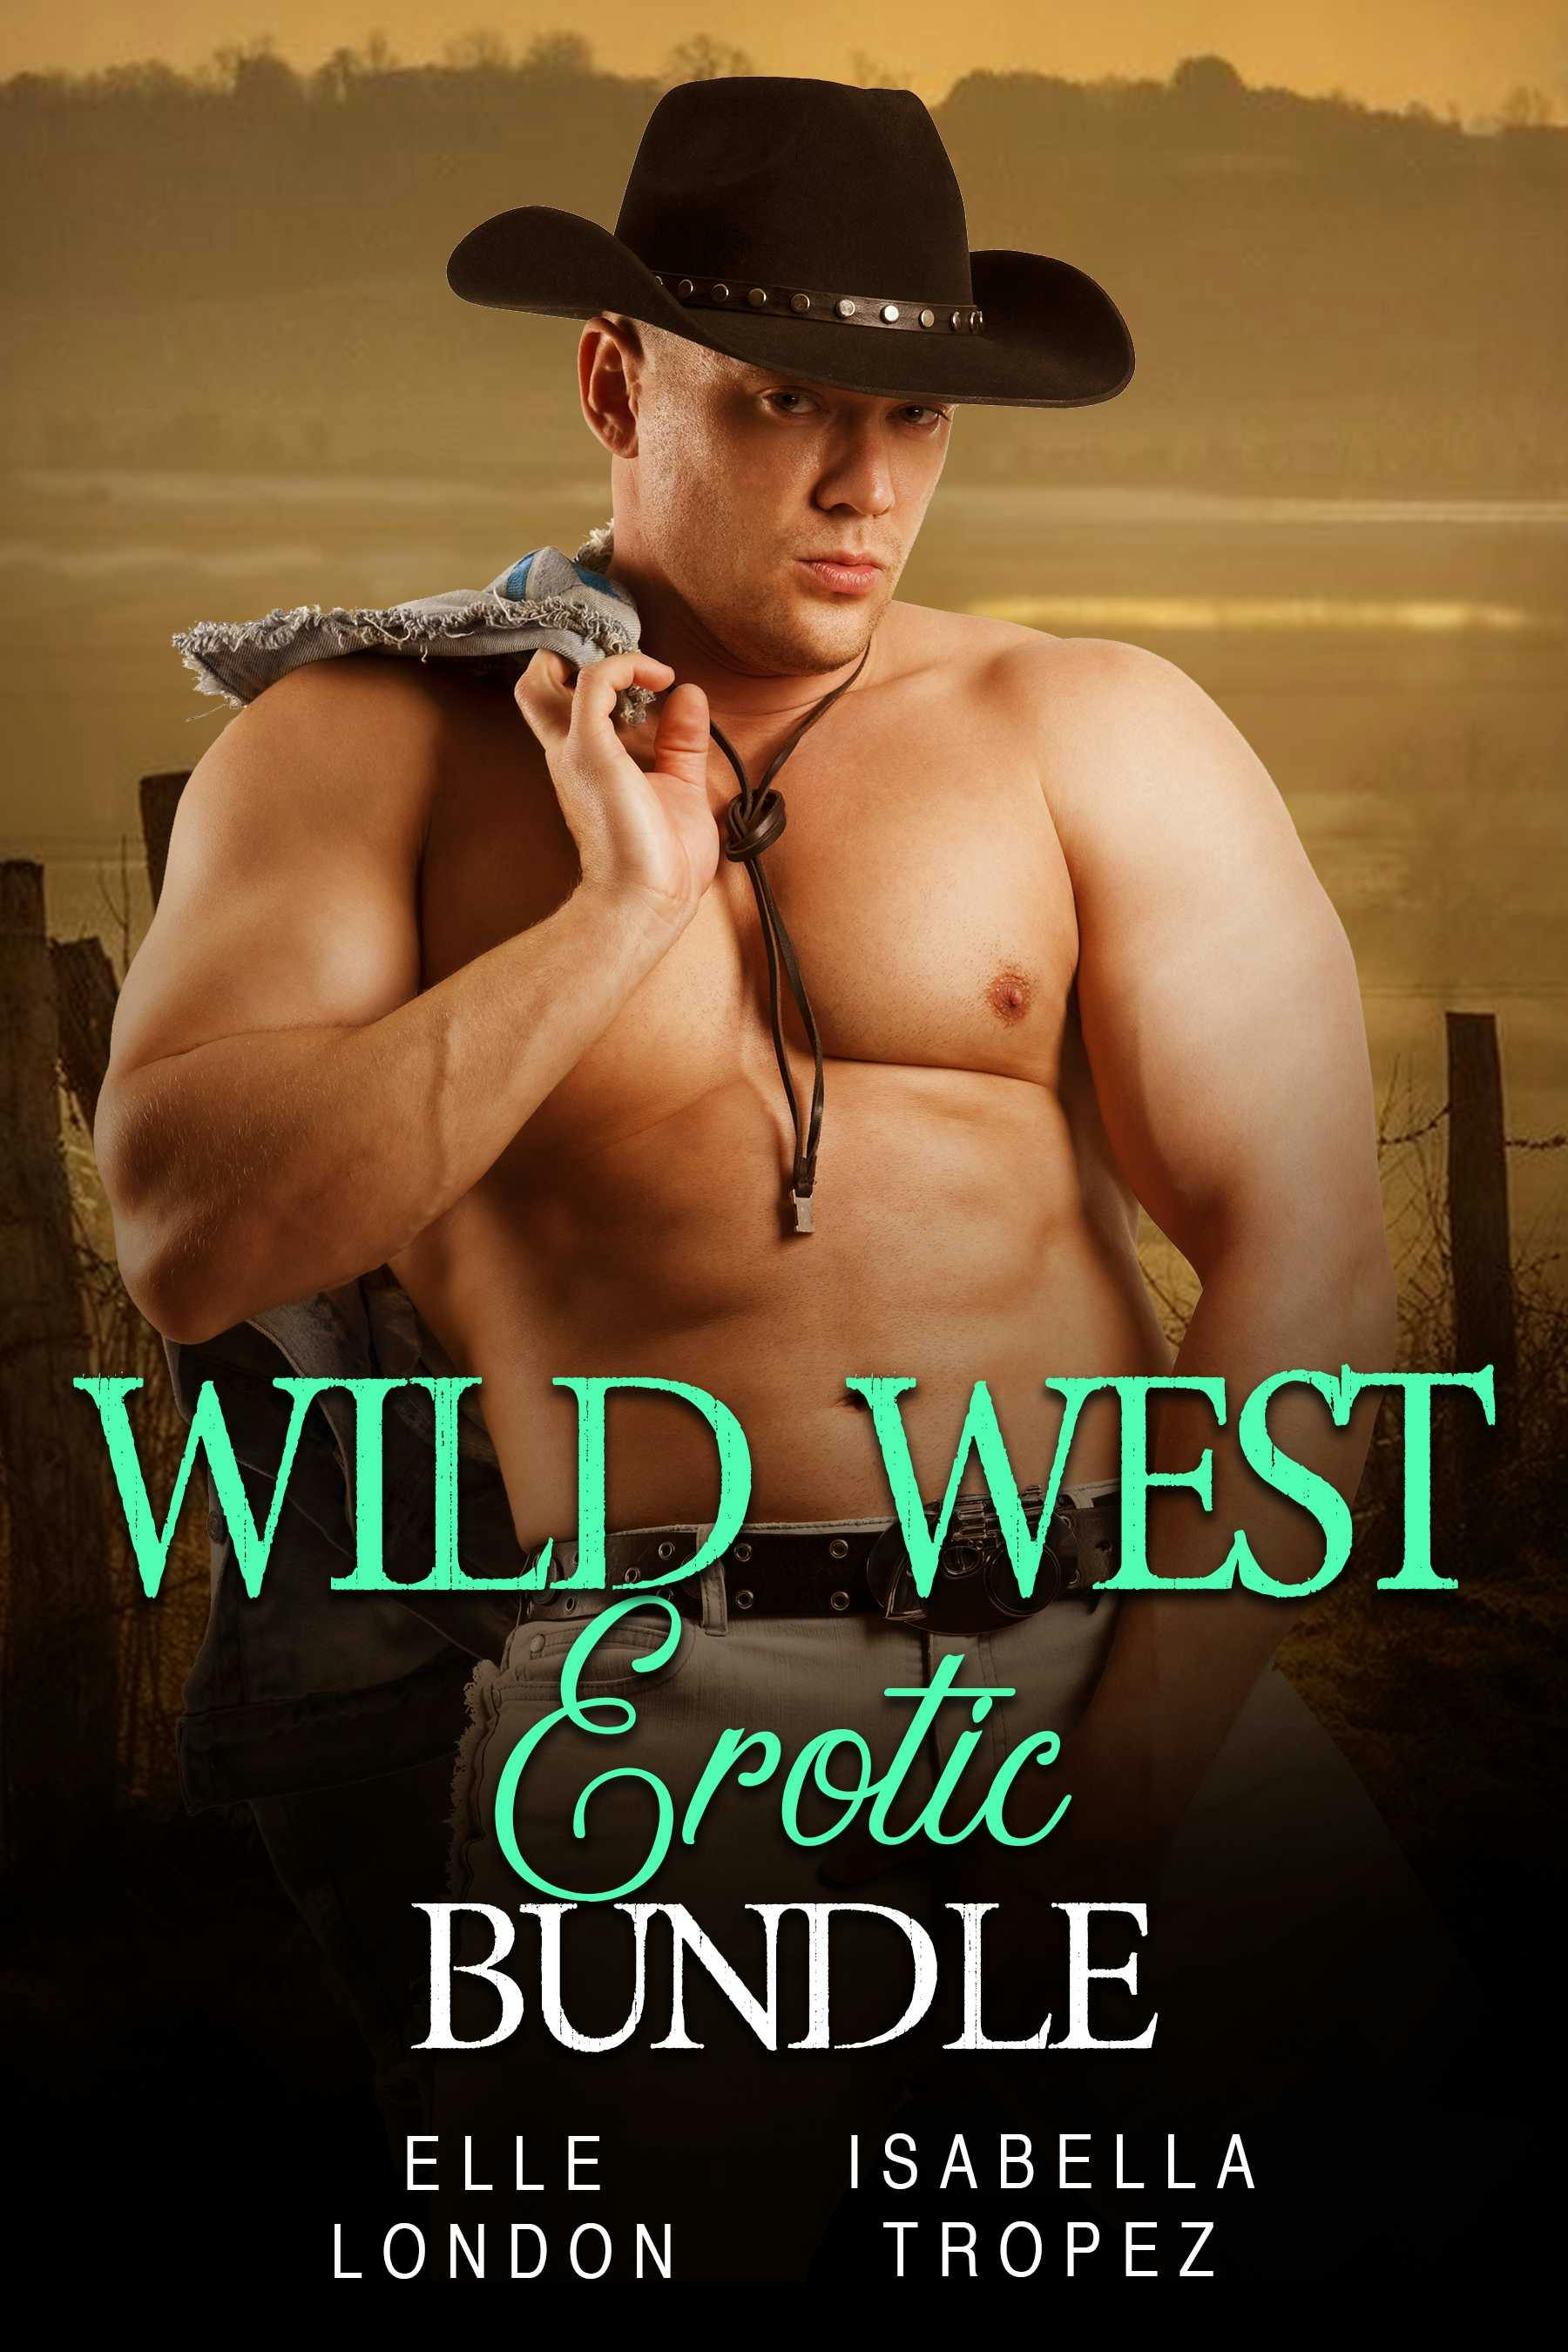 Wild West Erotic Bundle - Elle London, Isabella Tropez